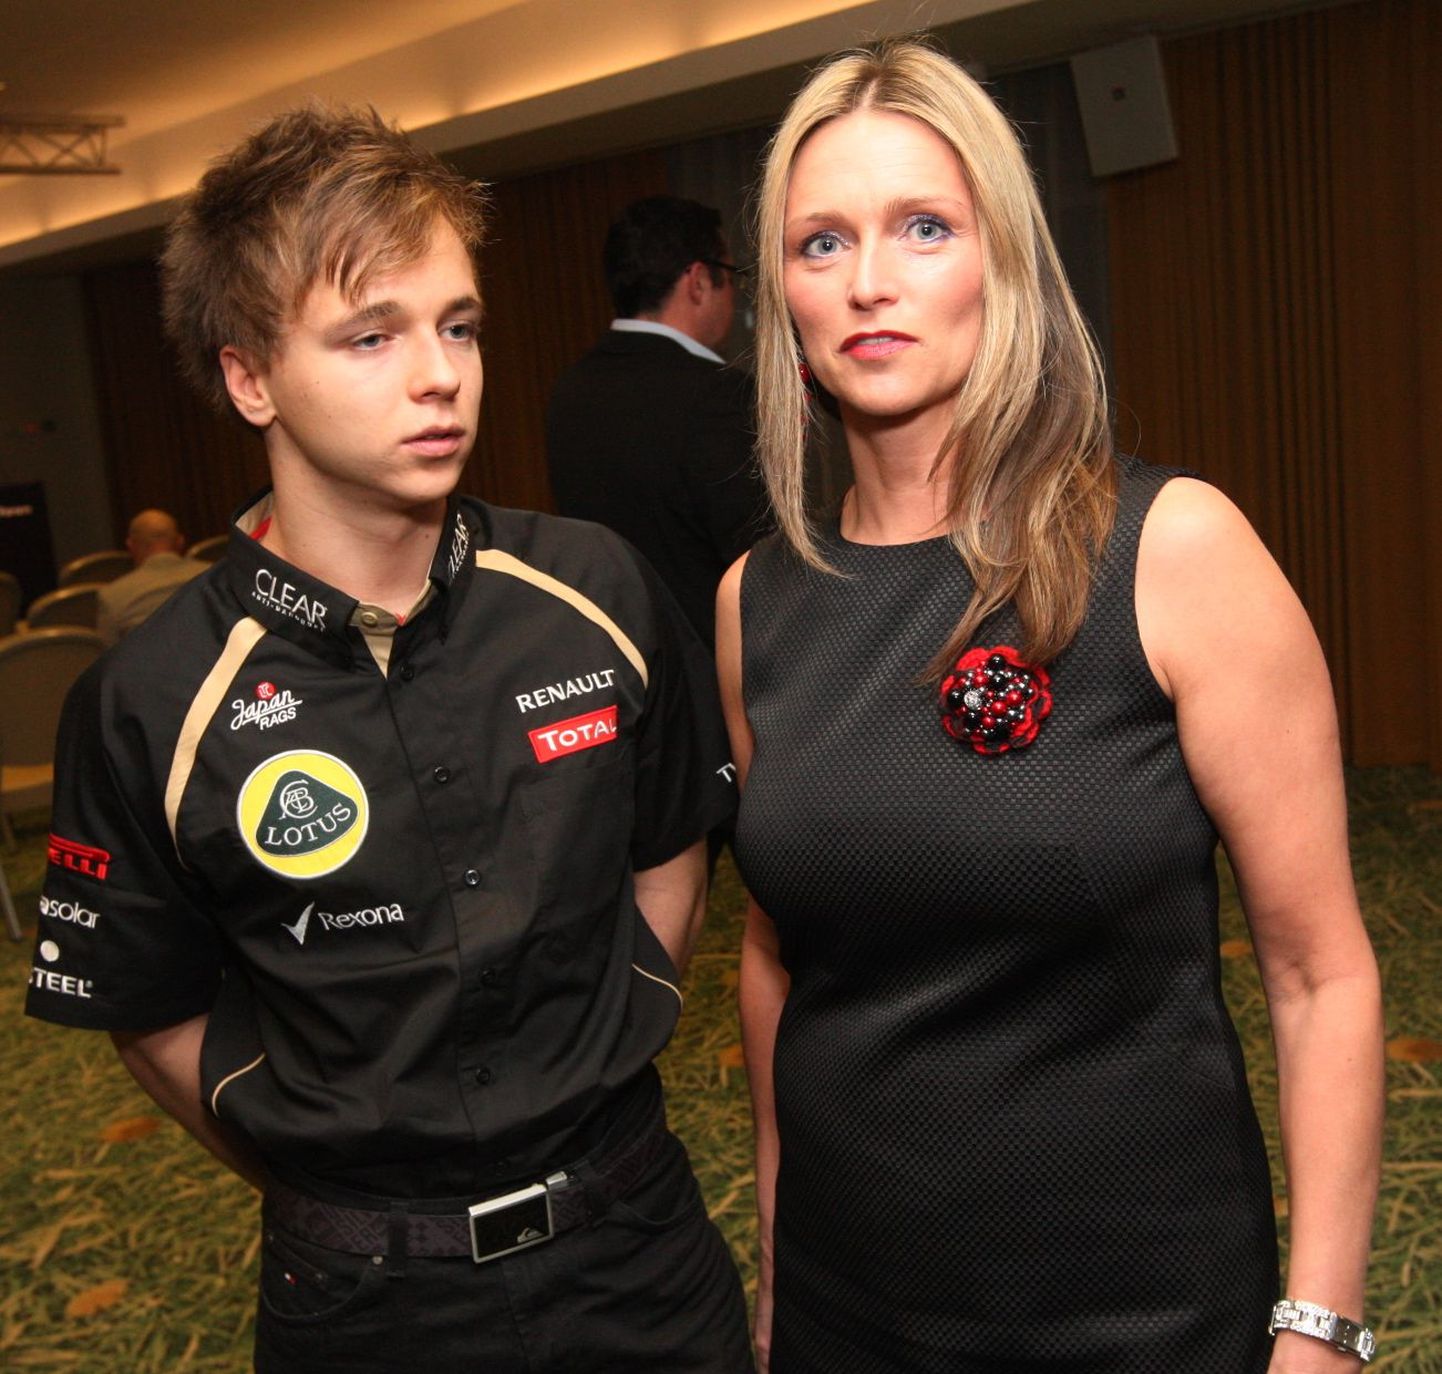 Kevin Korjus ja Lotus F1 meeskonna poolt korraldatud lanseerimisõhtu Nordic Hotel Forumis 7. märtsil 2012
Kevin Korjus koos ema Merle Korjusega